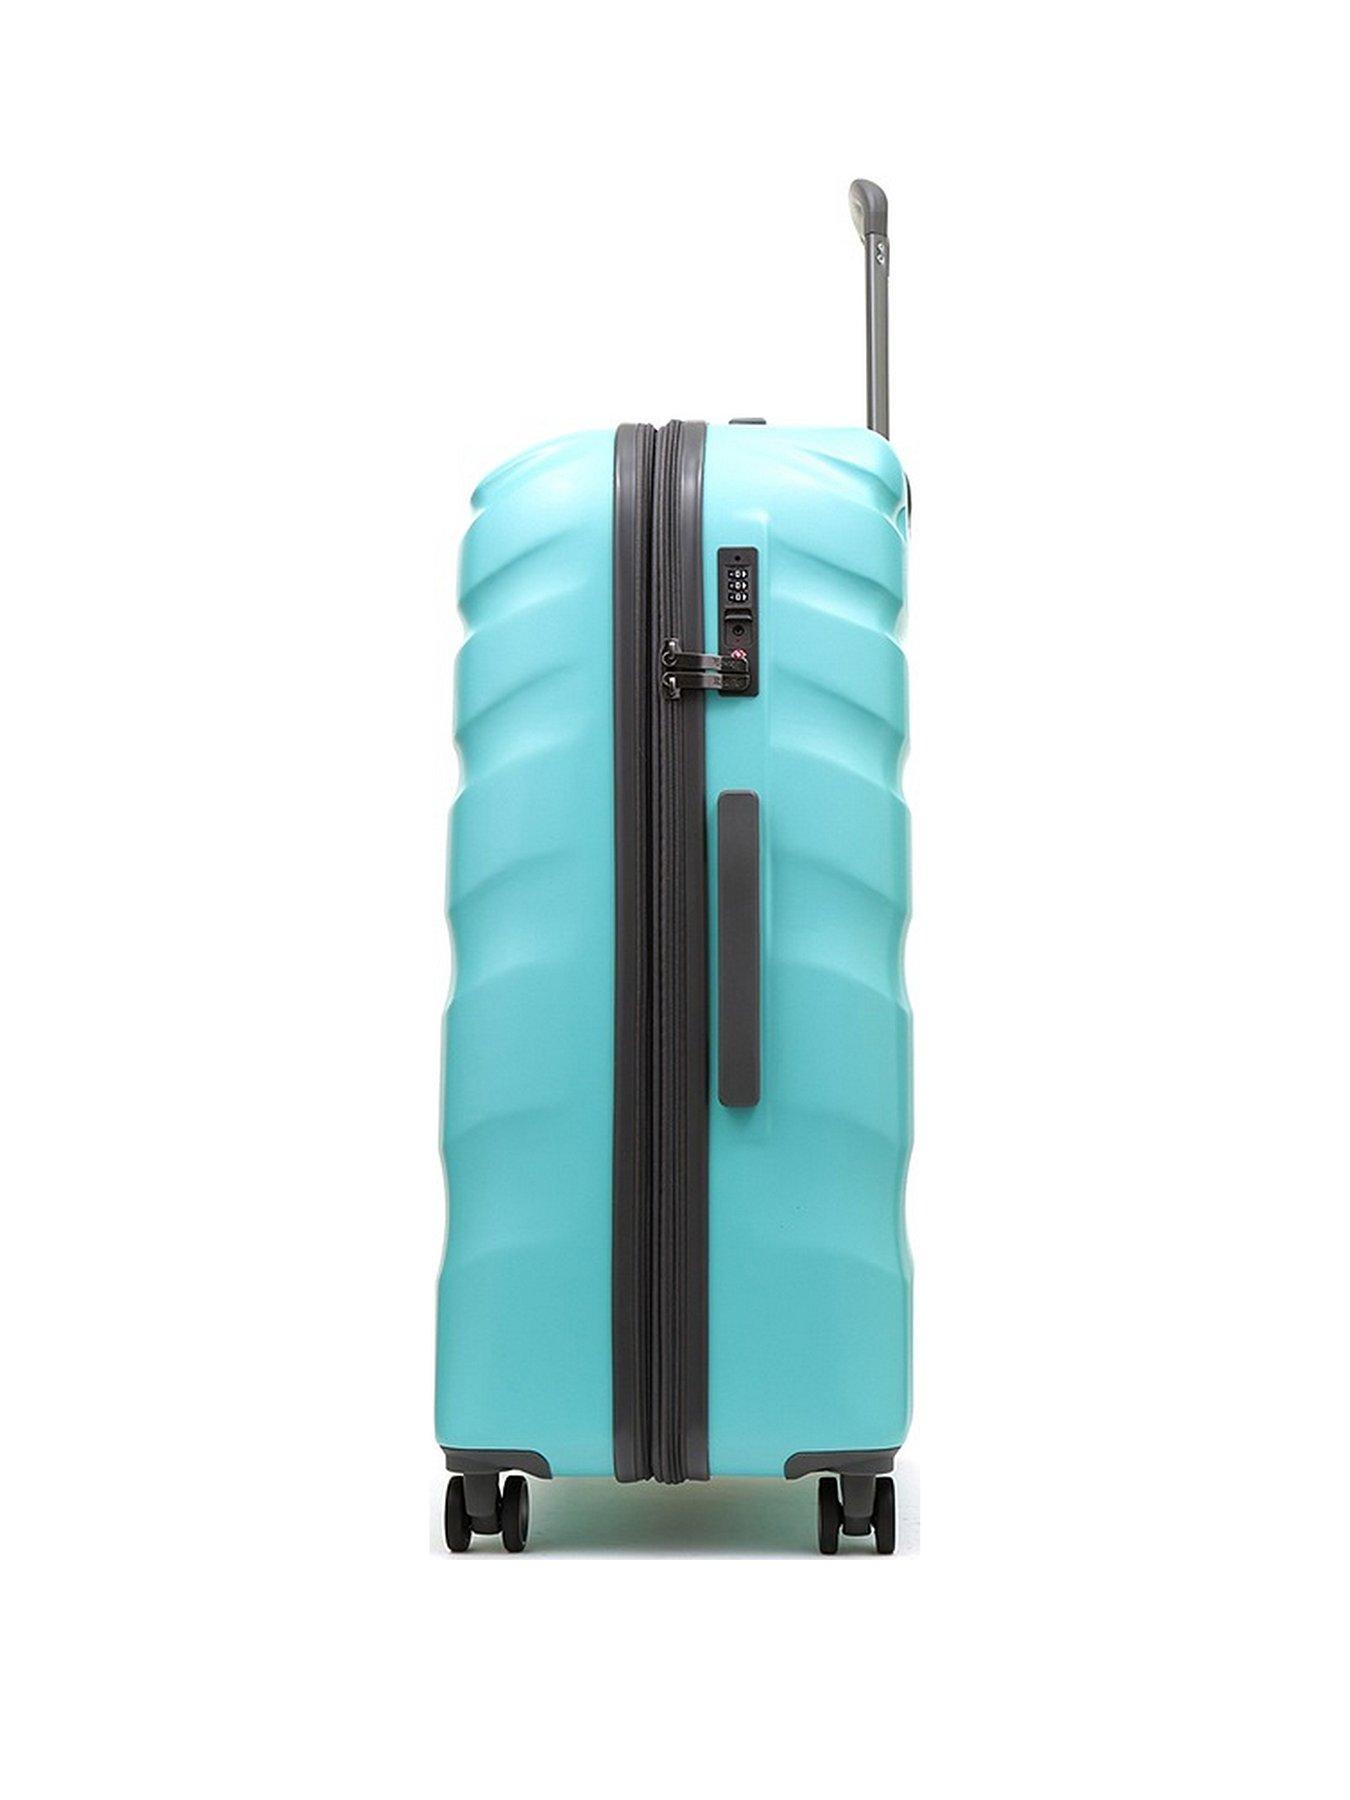 Rock Luggage Bali 8 Wheel Hardshell Large Suitcase - Turquoise | very.co.uk